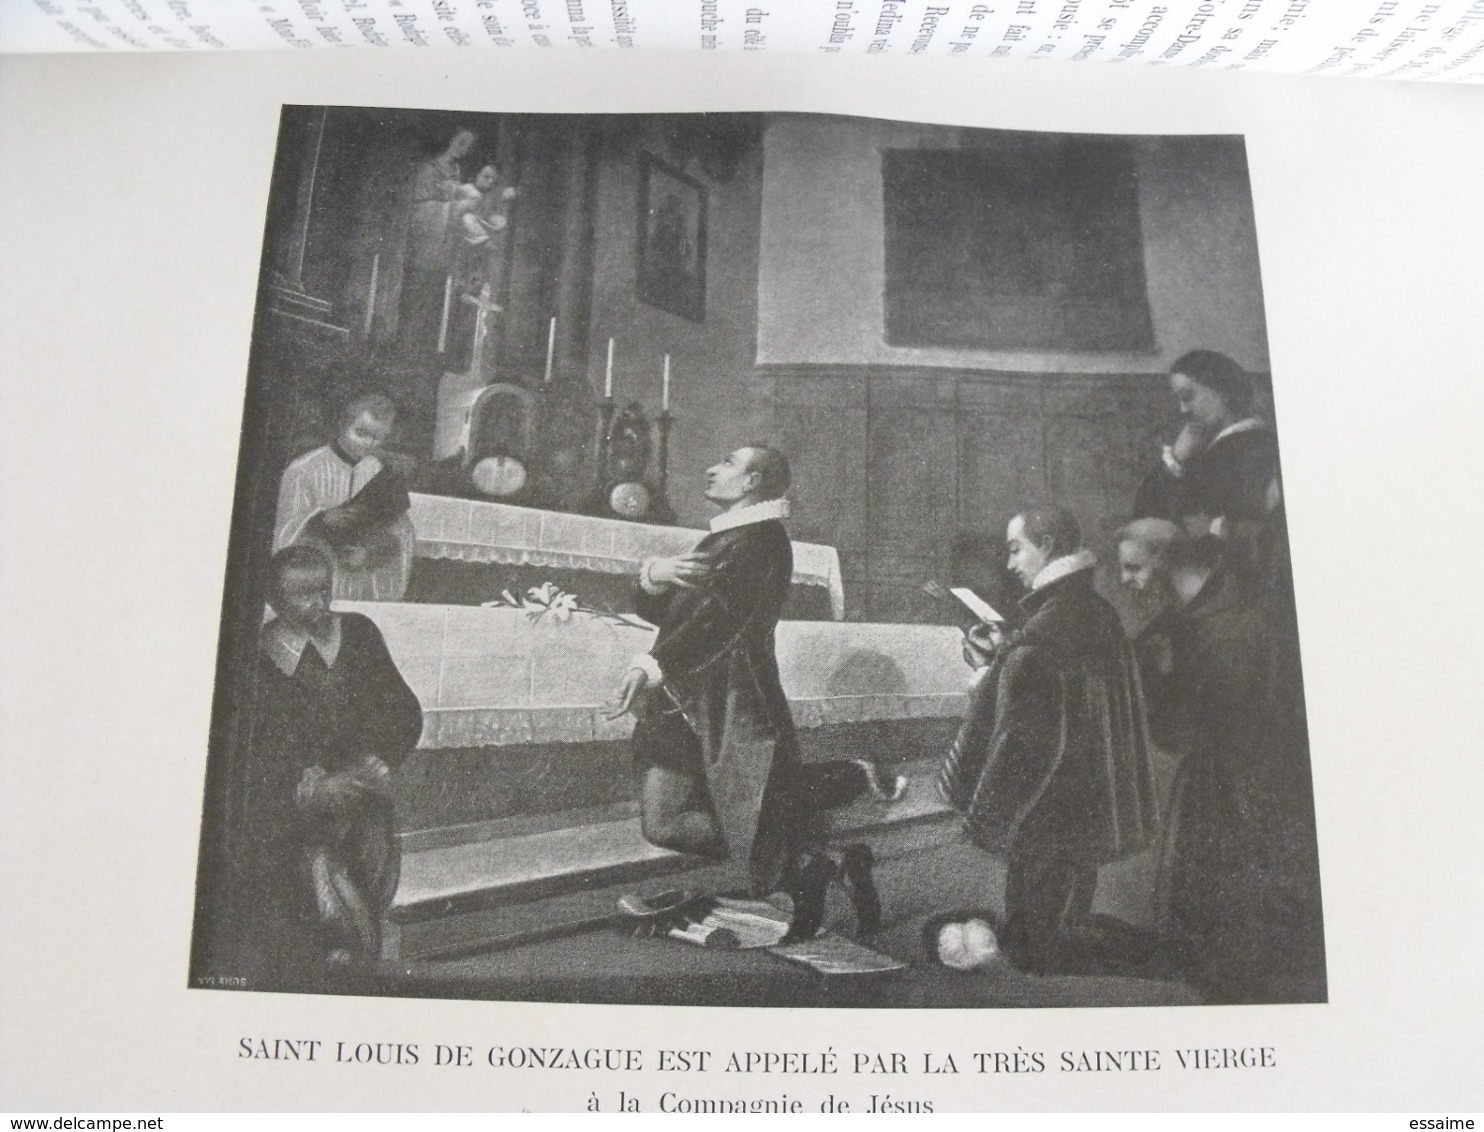 Marie et la compagnie de Jésus. A Drive. Casterman 1904. Ignace de Loyola. jésuite.